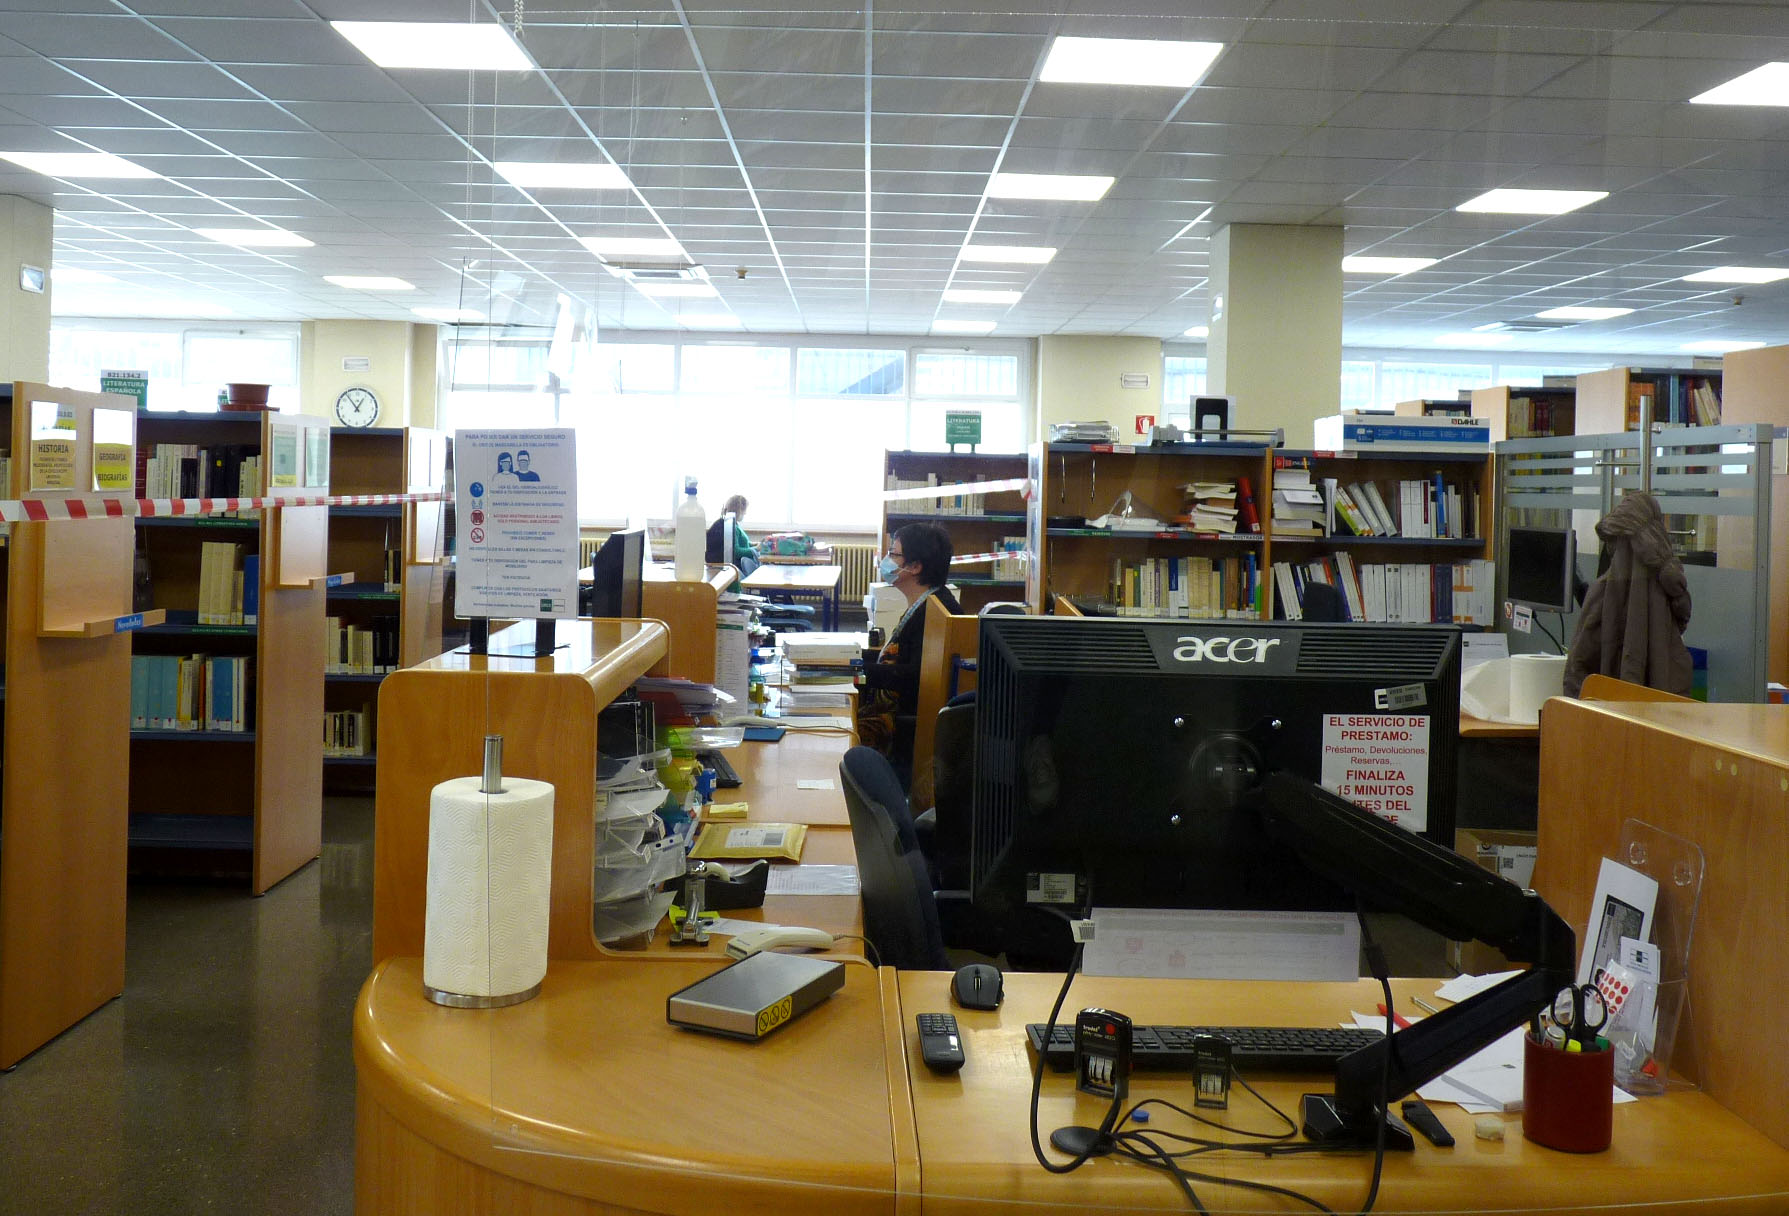 La biblioteca de UNED Pamplona abre con nuevo horario y aforo de estudiantes limitado 